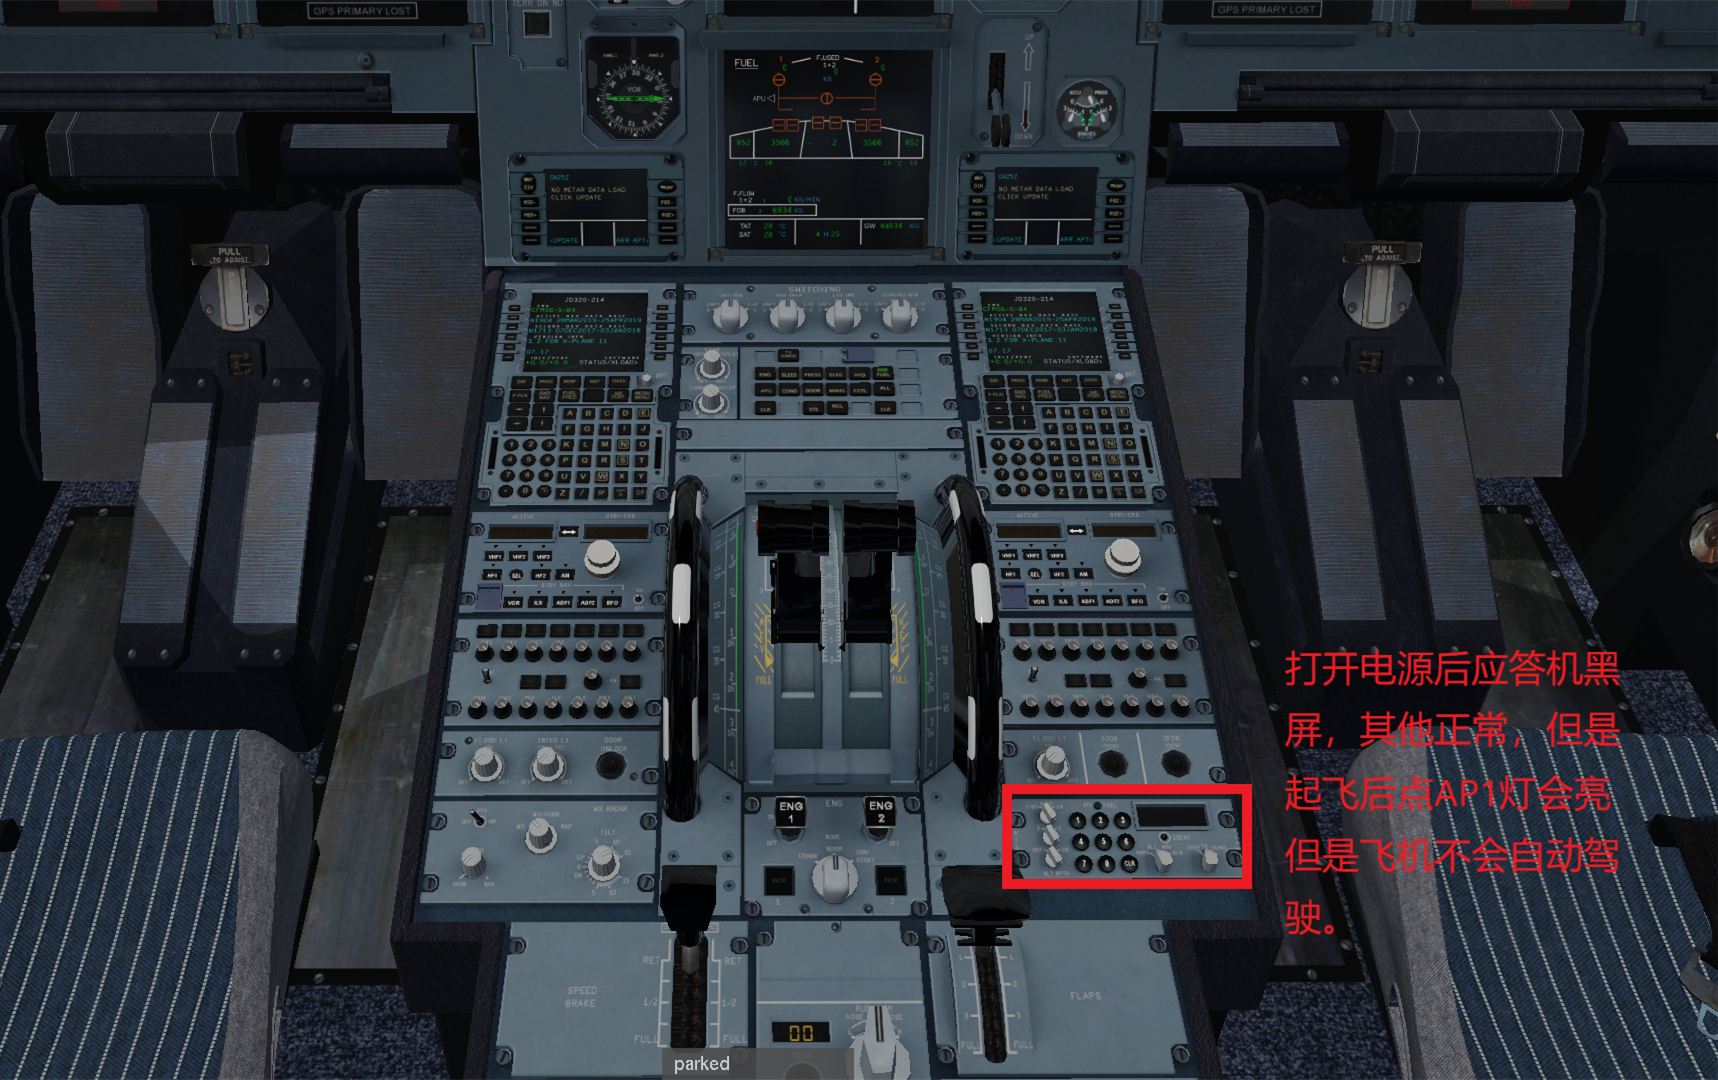 JARD A320  不能导航应答机黑屏的解决办法-3022 